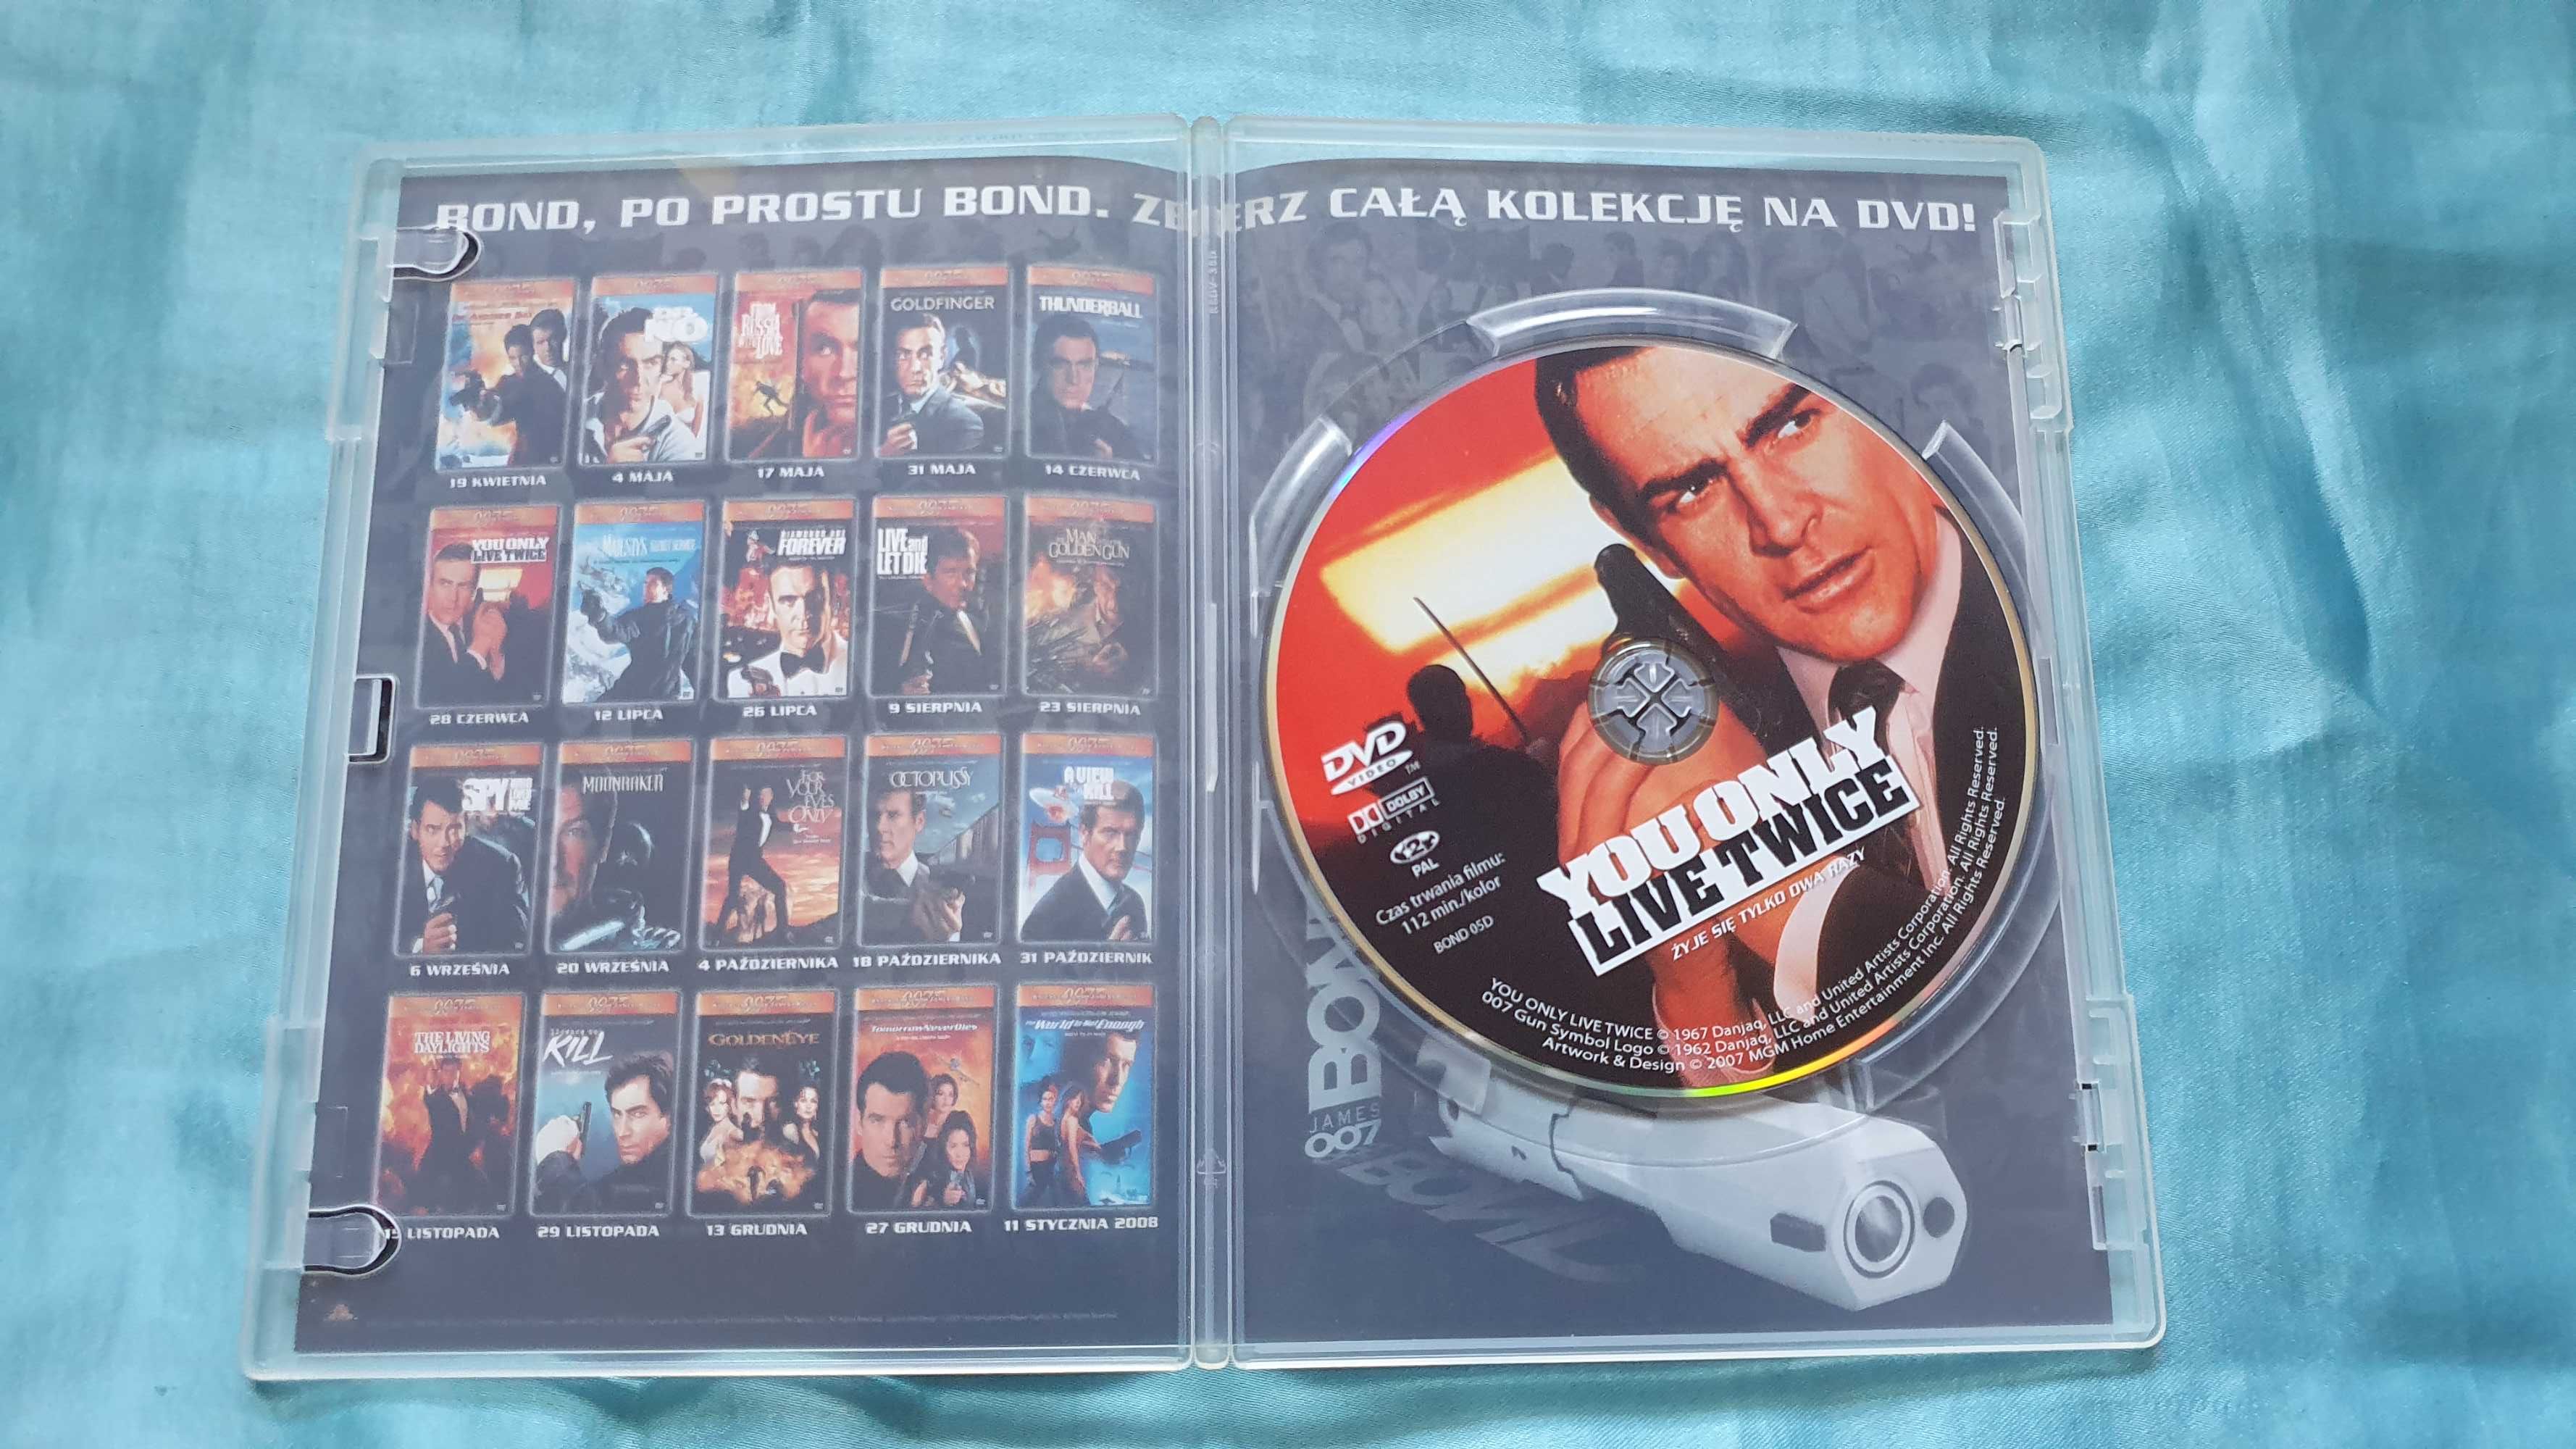 007 Żyje się tylko dwa razy  DVD